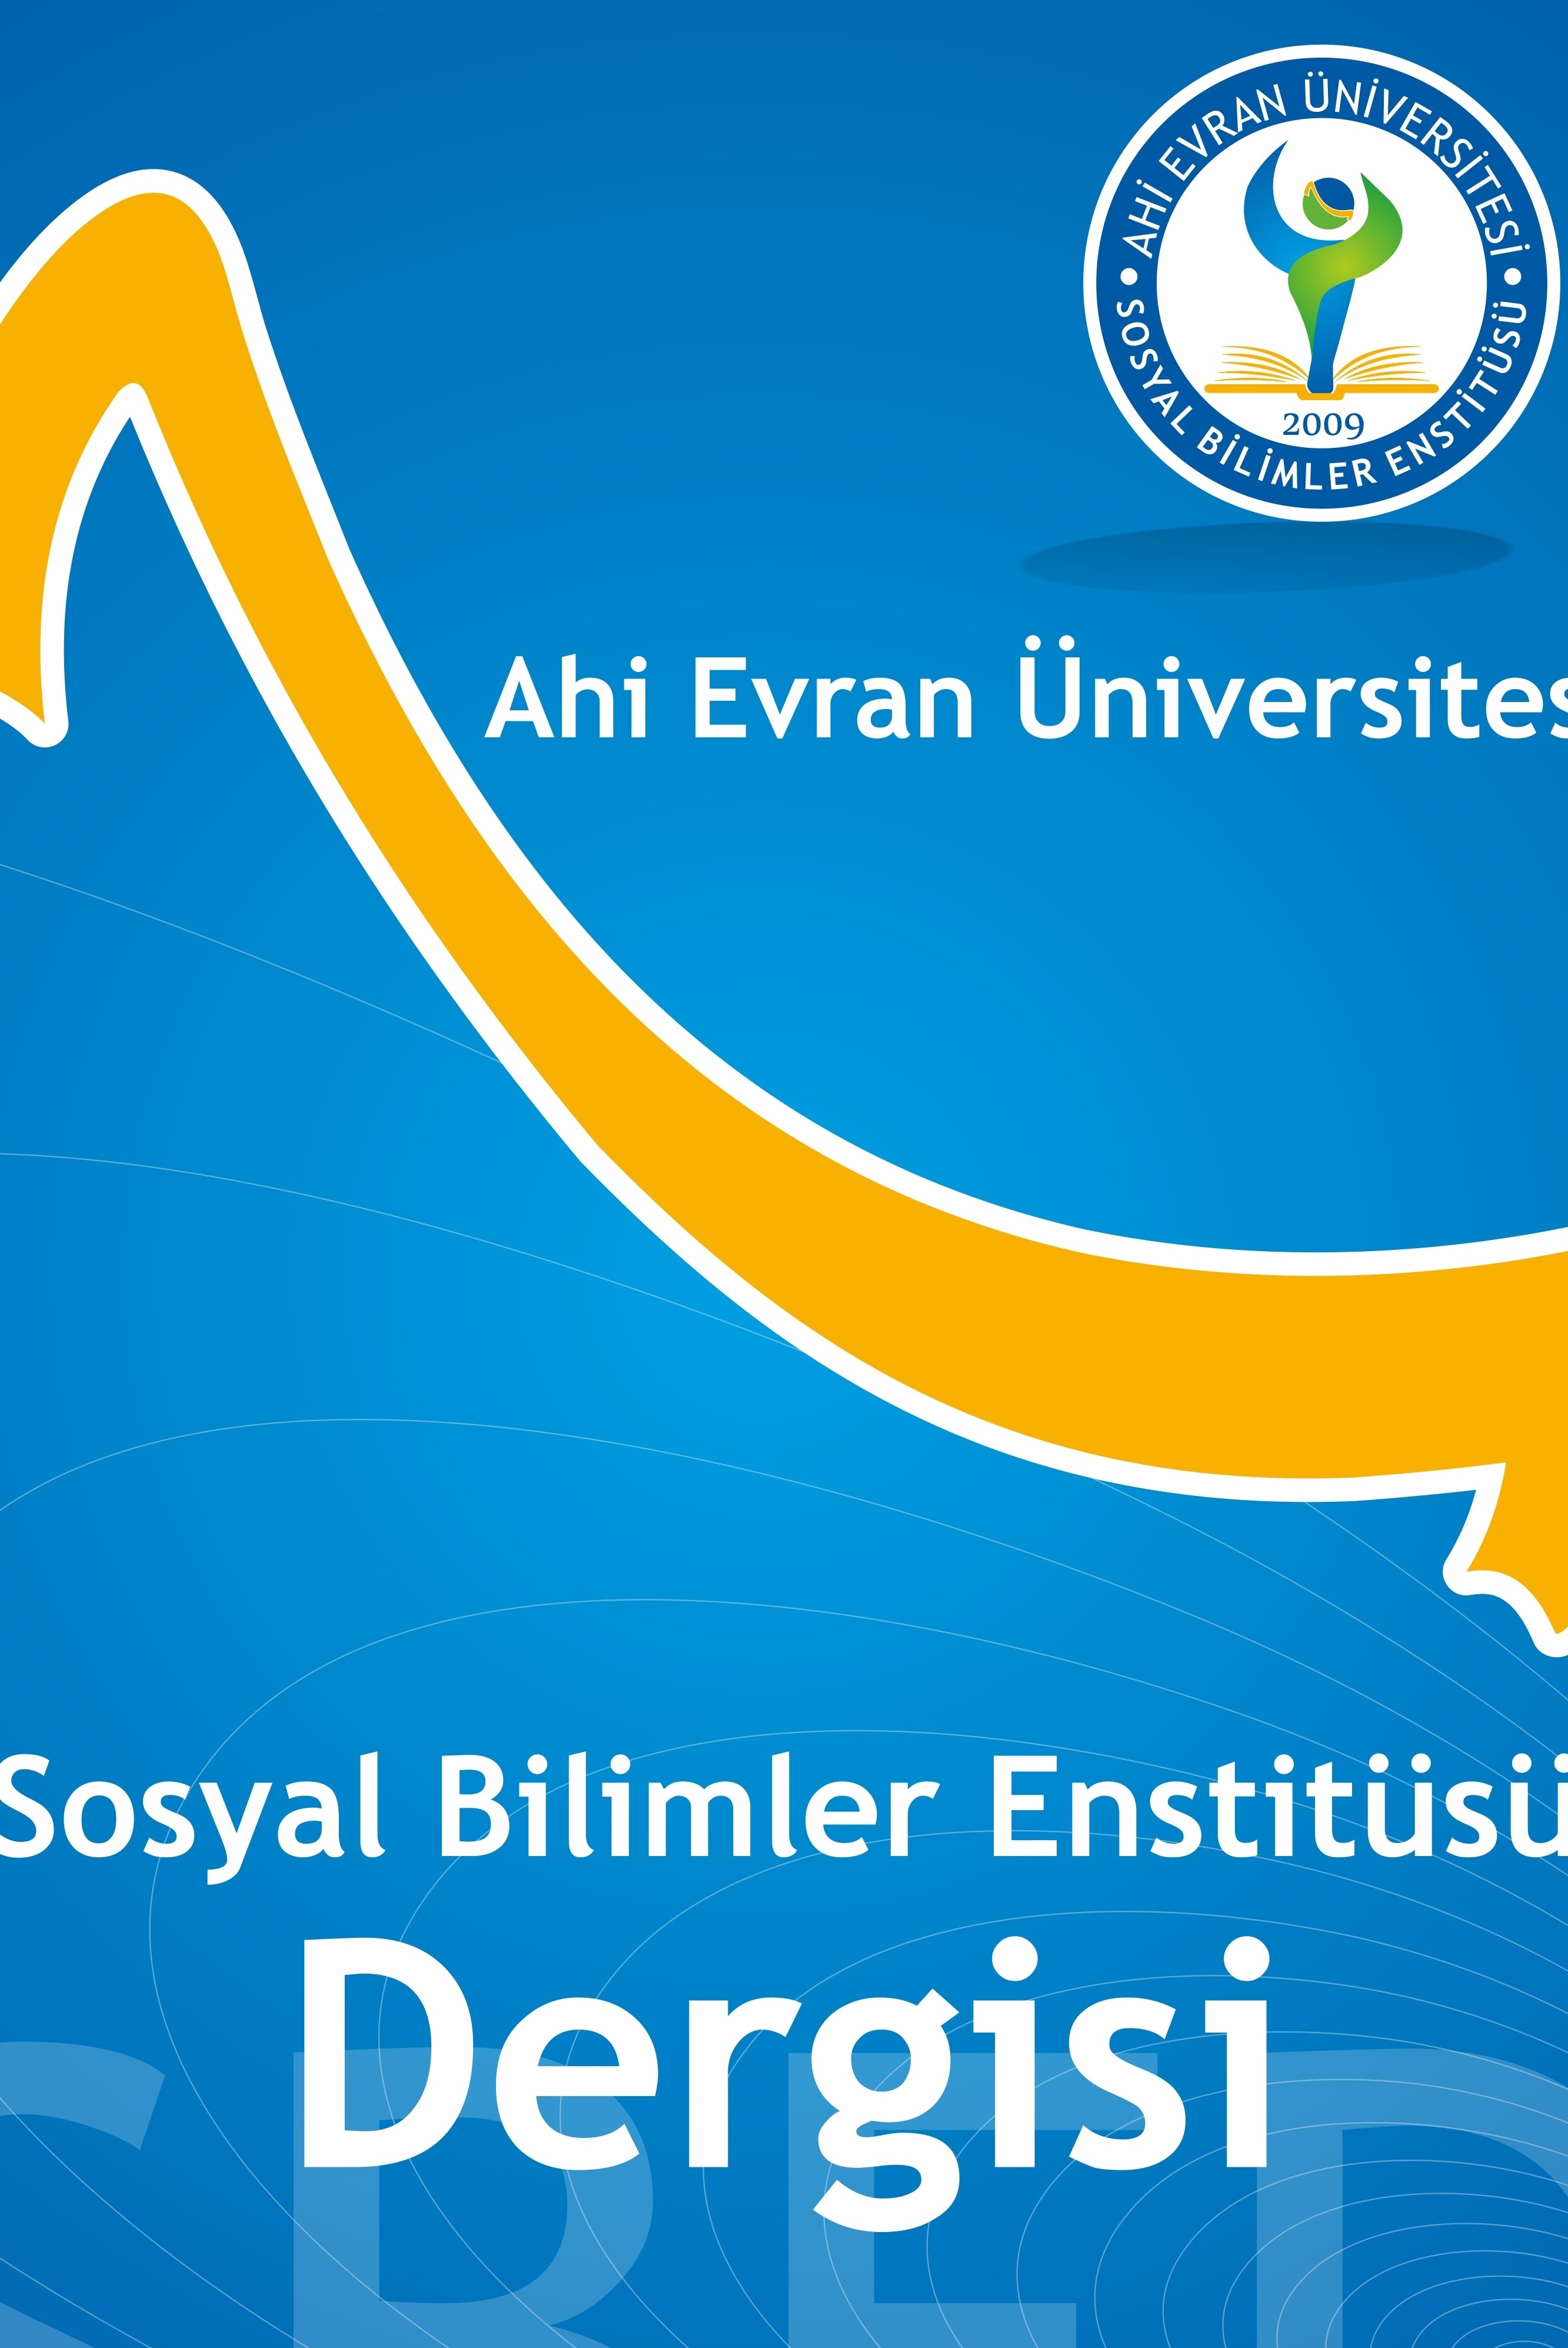 Ahi Evran Üniversitesi Sosyal Bilimler Enstitüsü Dergisi